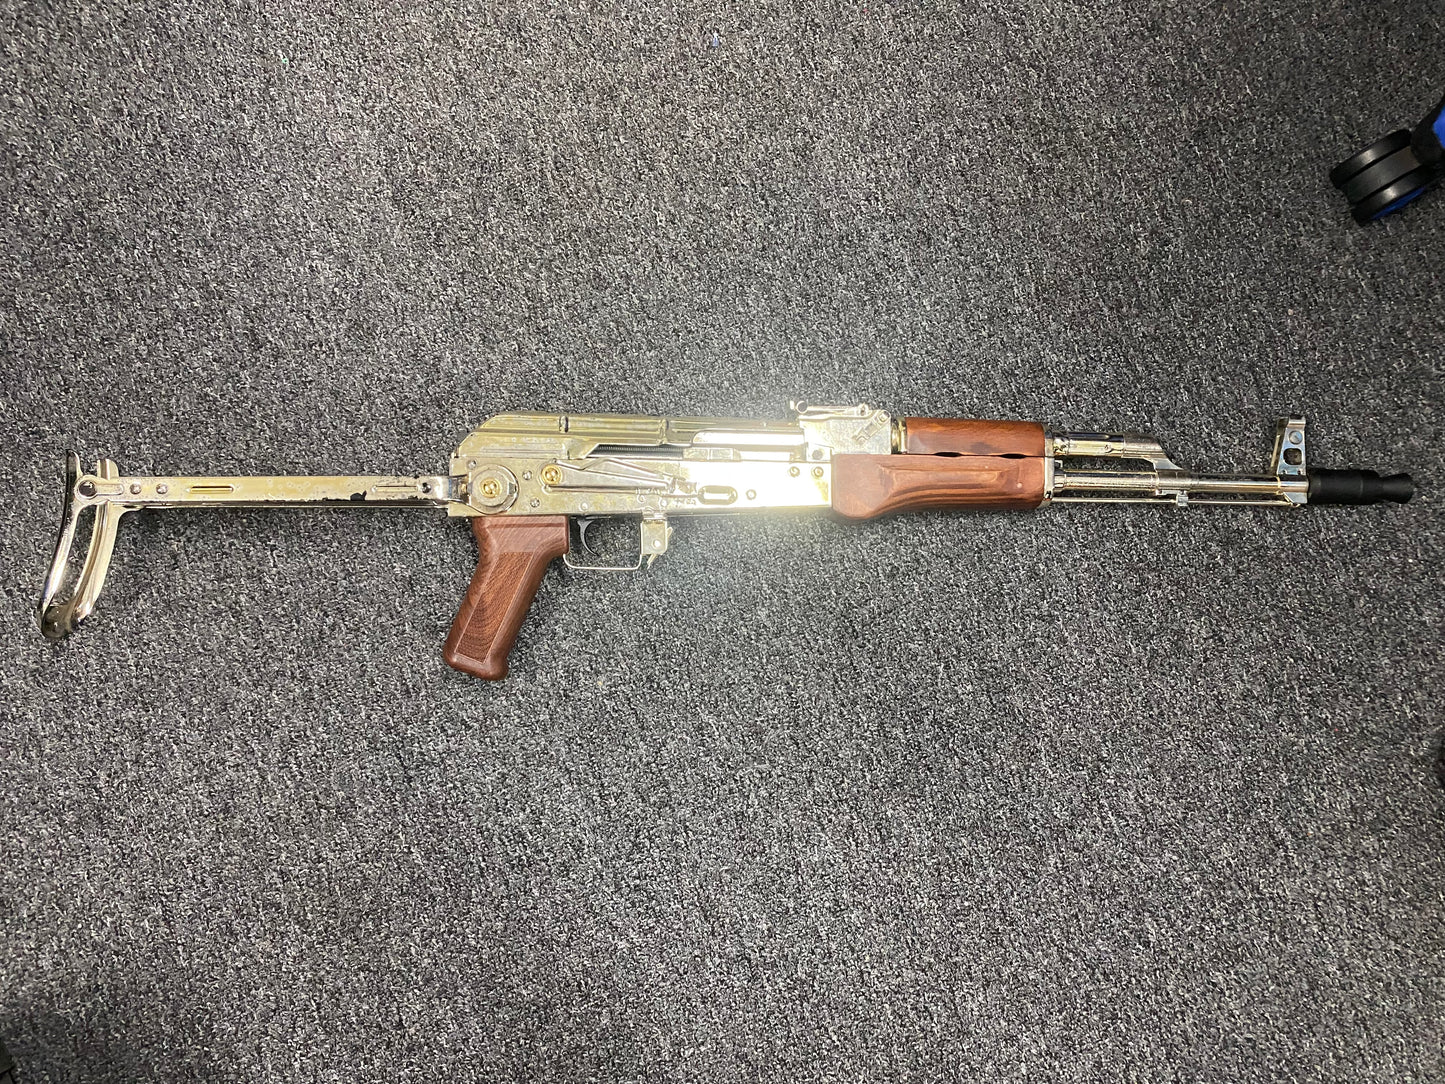 
                  
                    مسدس جل ذو جرس مزدوج فضي من نوع AK قابل للطي من اليد الثانية
                  
                